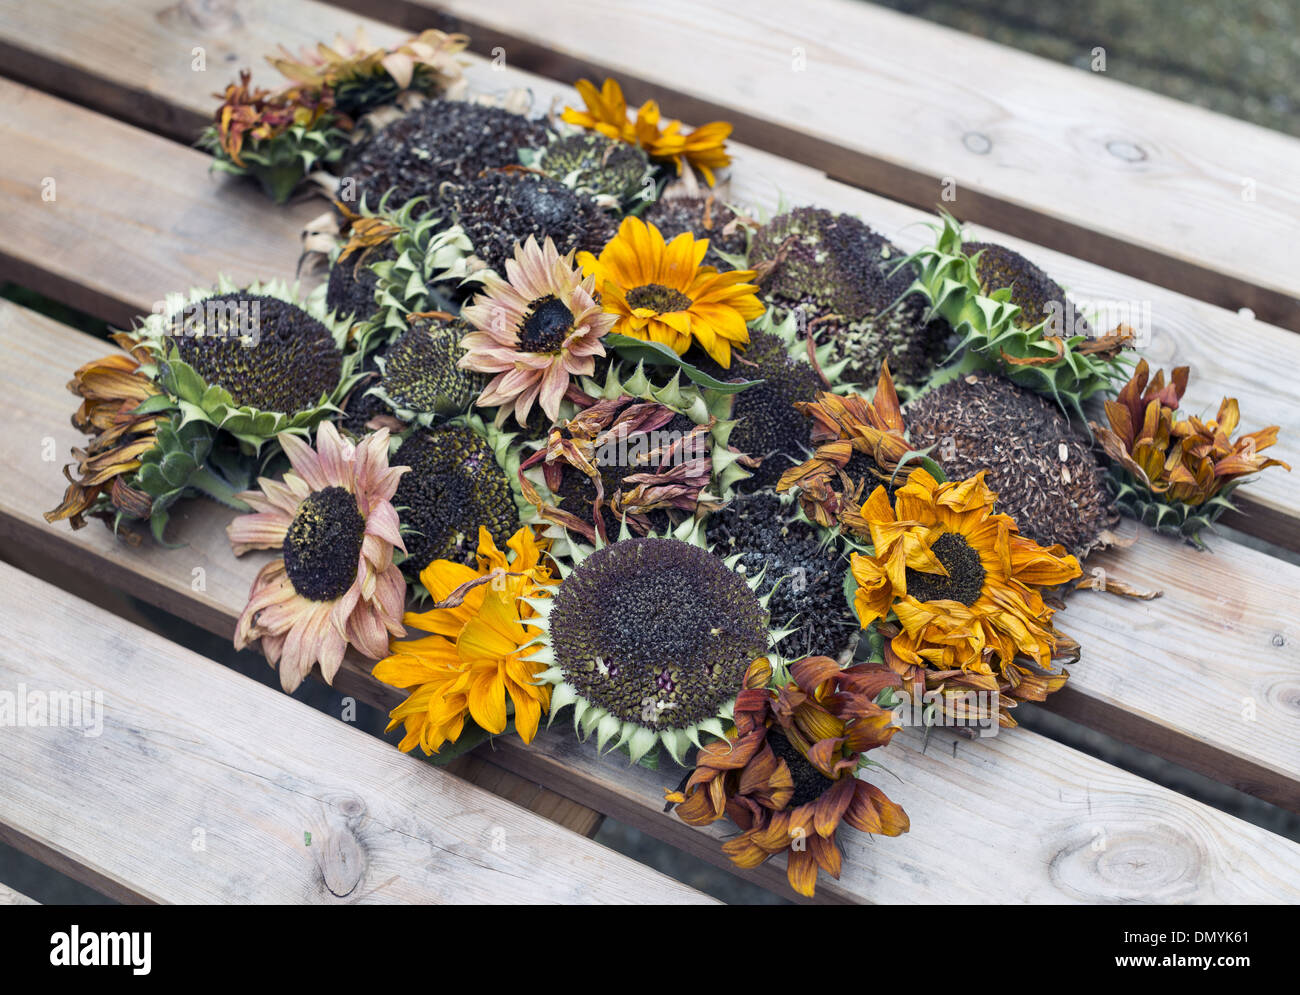 Eine Vielzahl von geernteten Sonnenblumenköpfe Austrocknen auf hölzernen Gartentisch bereit für Johannisbeermarmelade Stockfoto